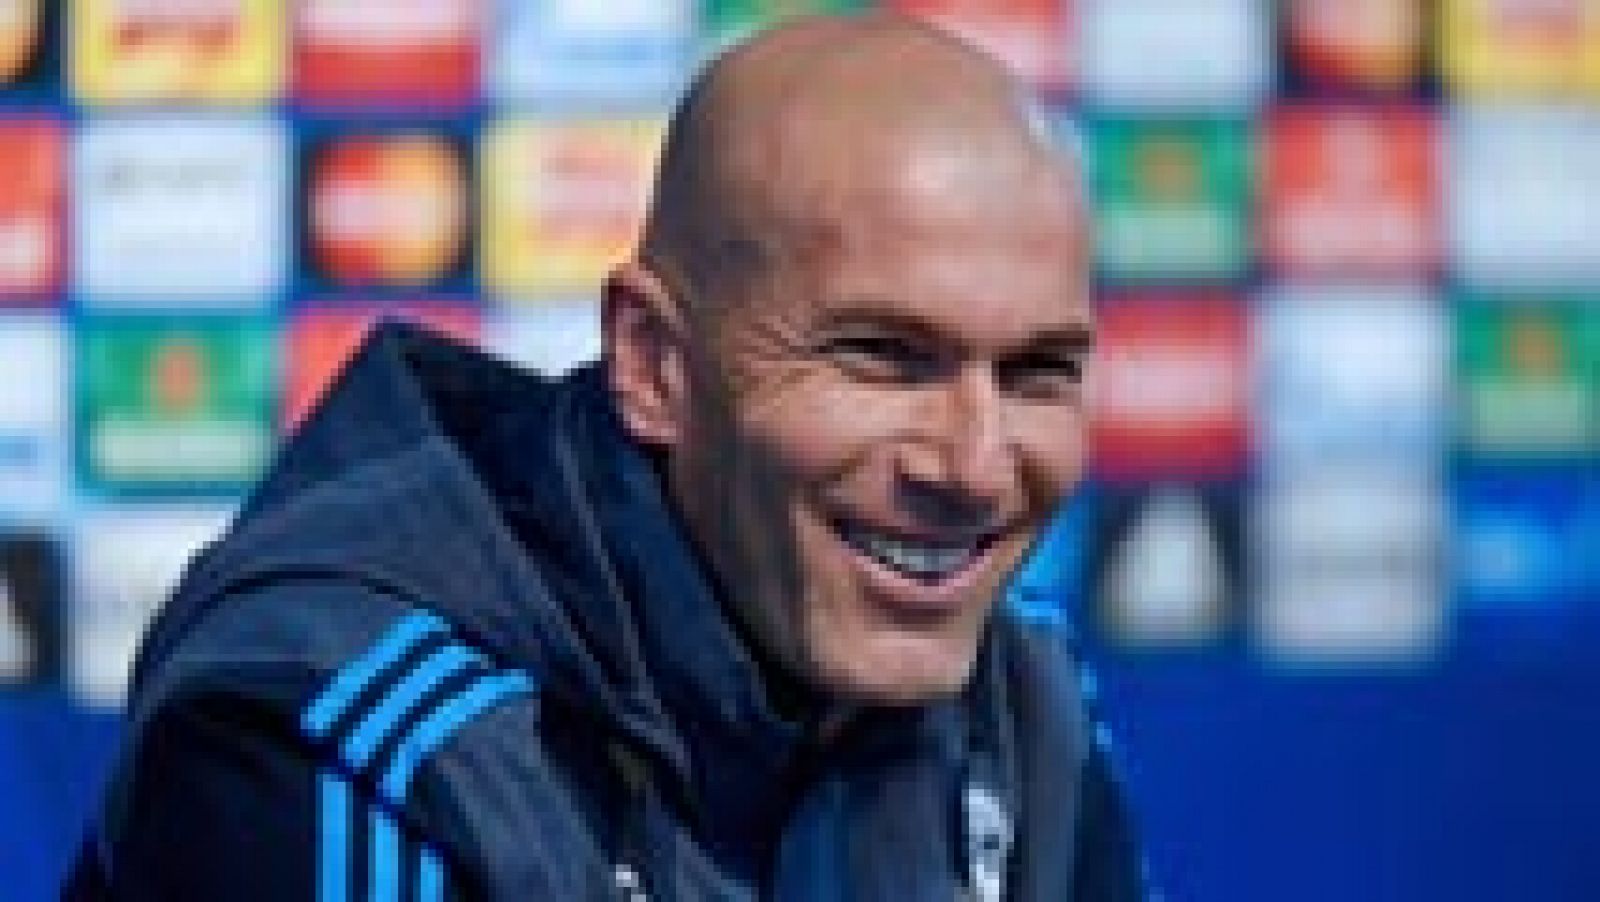 El técnico del Real Madrid, el francés Zinedine Zidane, ha asegurado que Cristiano Ronaldo y Karim Benzema están "totalmente recuperados" de sus respectivas molestias y confirmó que serán titulares en el duelo de ida de semifinales de Liga de Campeones frente al Manchester City. [Manchester City - Real Madrid, en vivo, martes a las 20:45h. en RTVE.es]